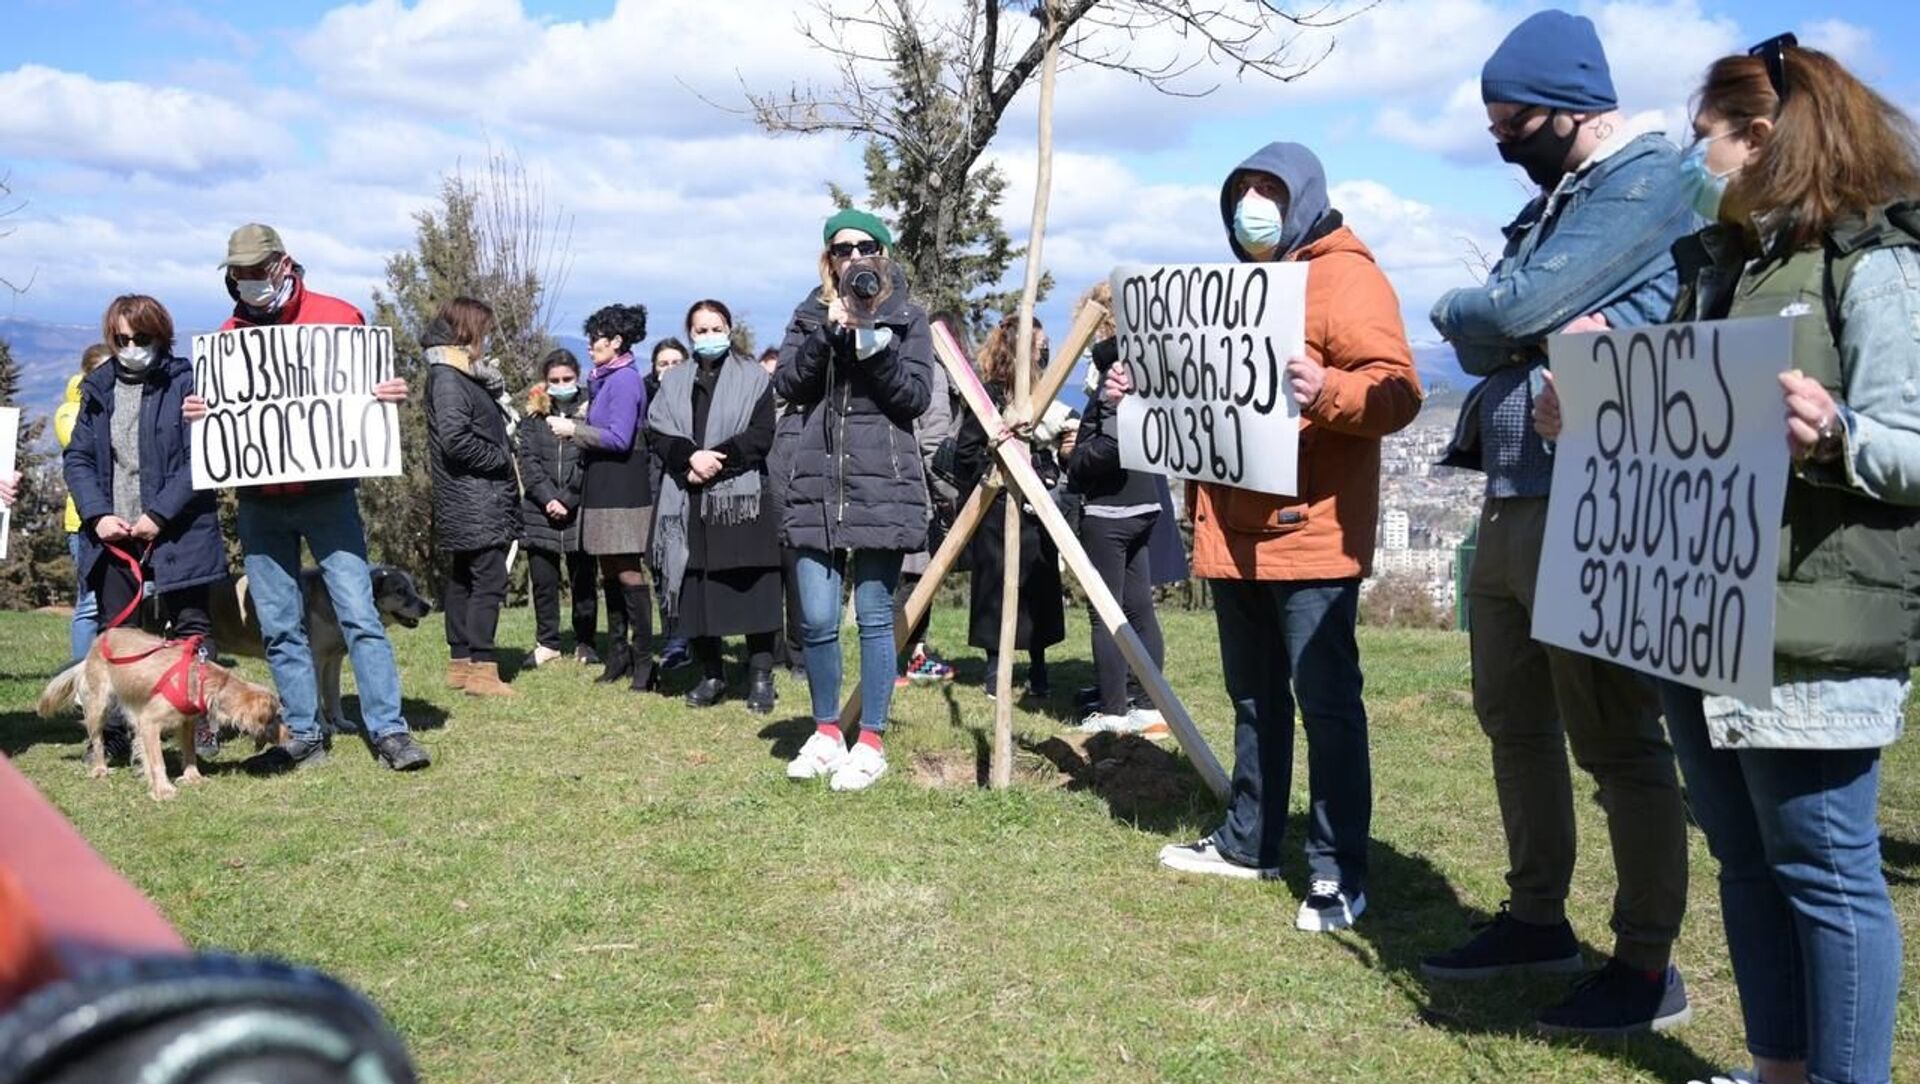 Акция протеста против застройки в Вашлиджвари 28 марта 2021 года - Sputnik Грузия, 1920, 02.04.2021